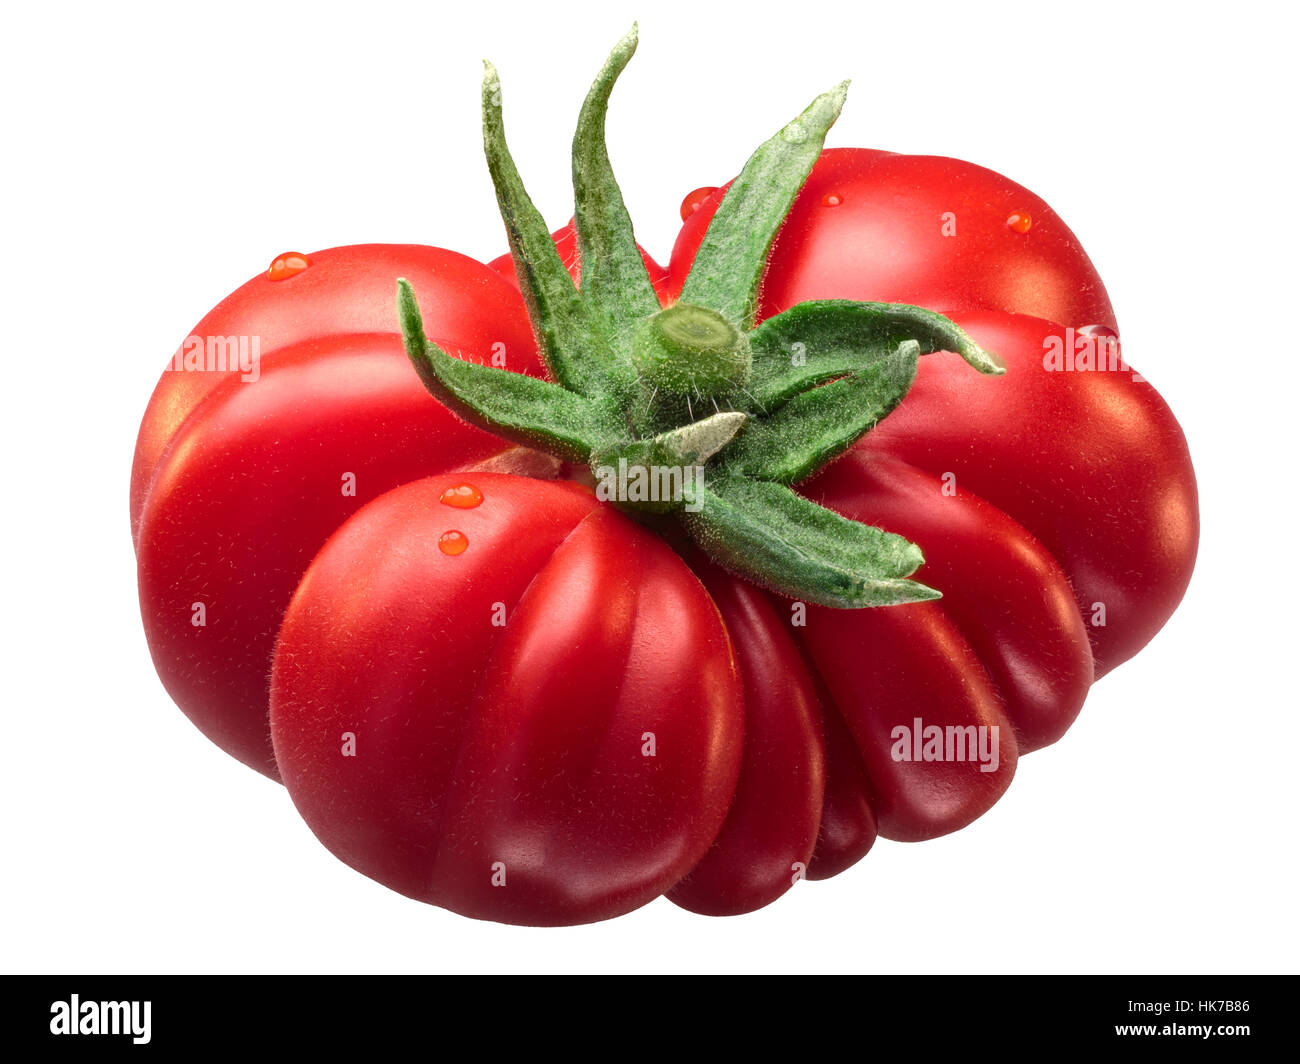 Costoluto Fiorentino côtelée douce tomate (Solanum lycopersicum), beefsteak (slicer) type, avec des sépales. Chemin de détourage, shadowless Banque D'Images